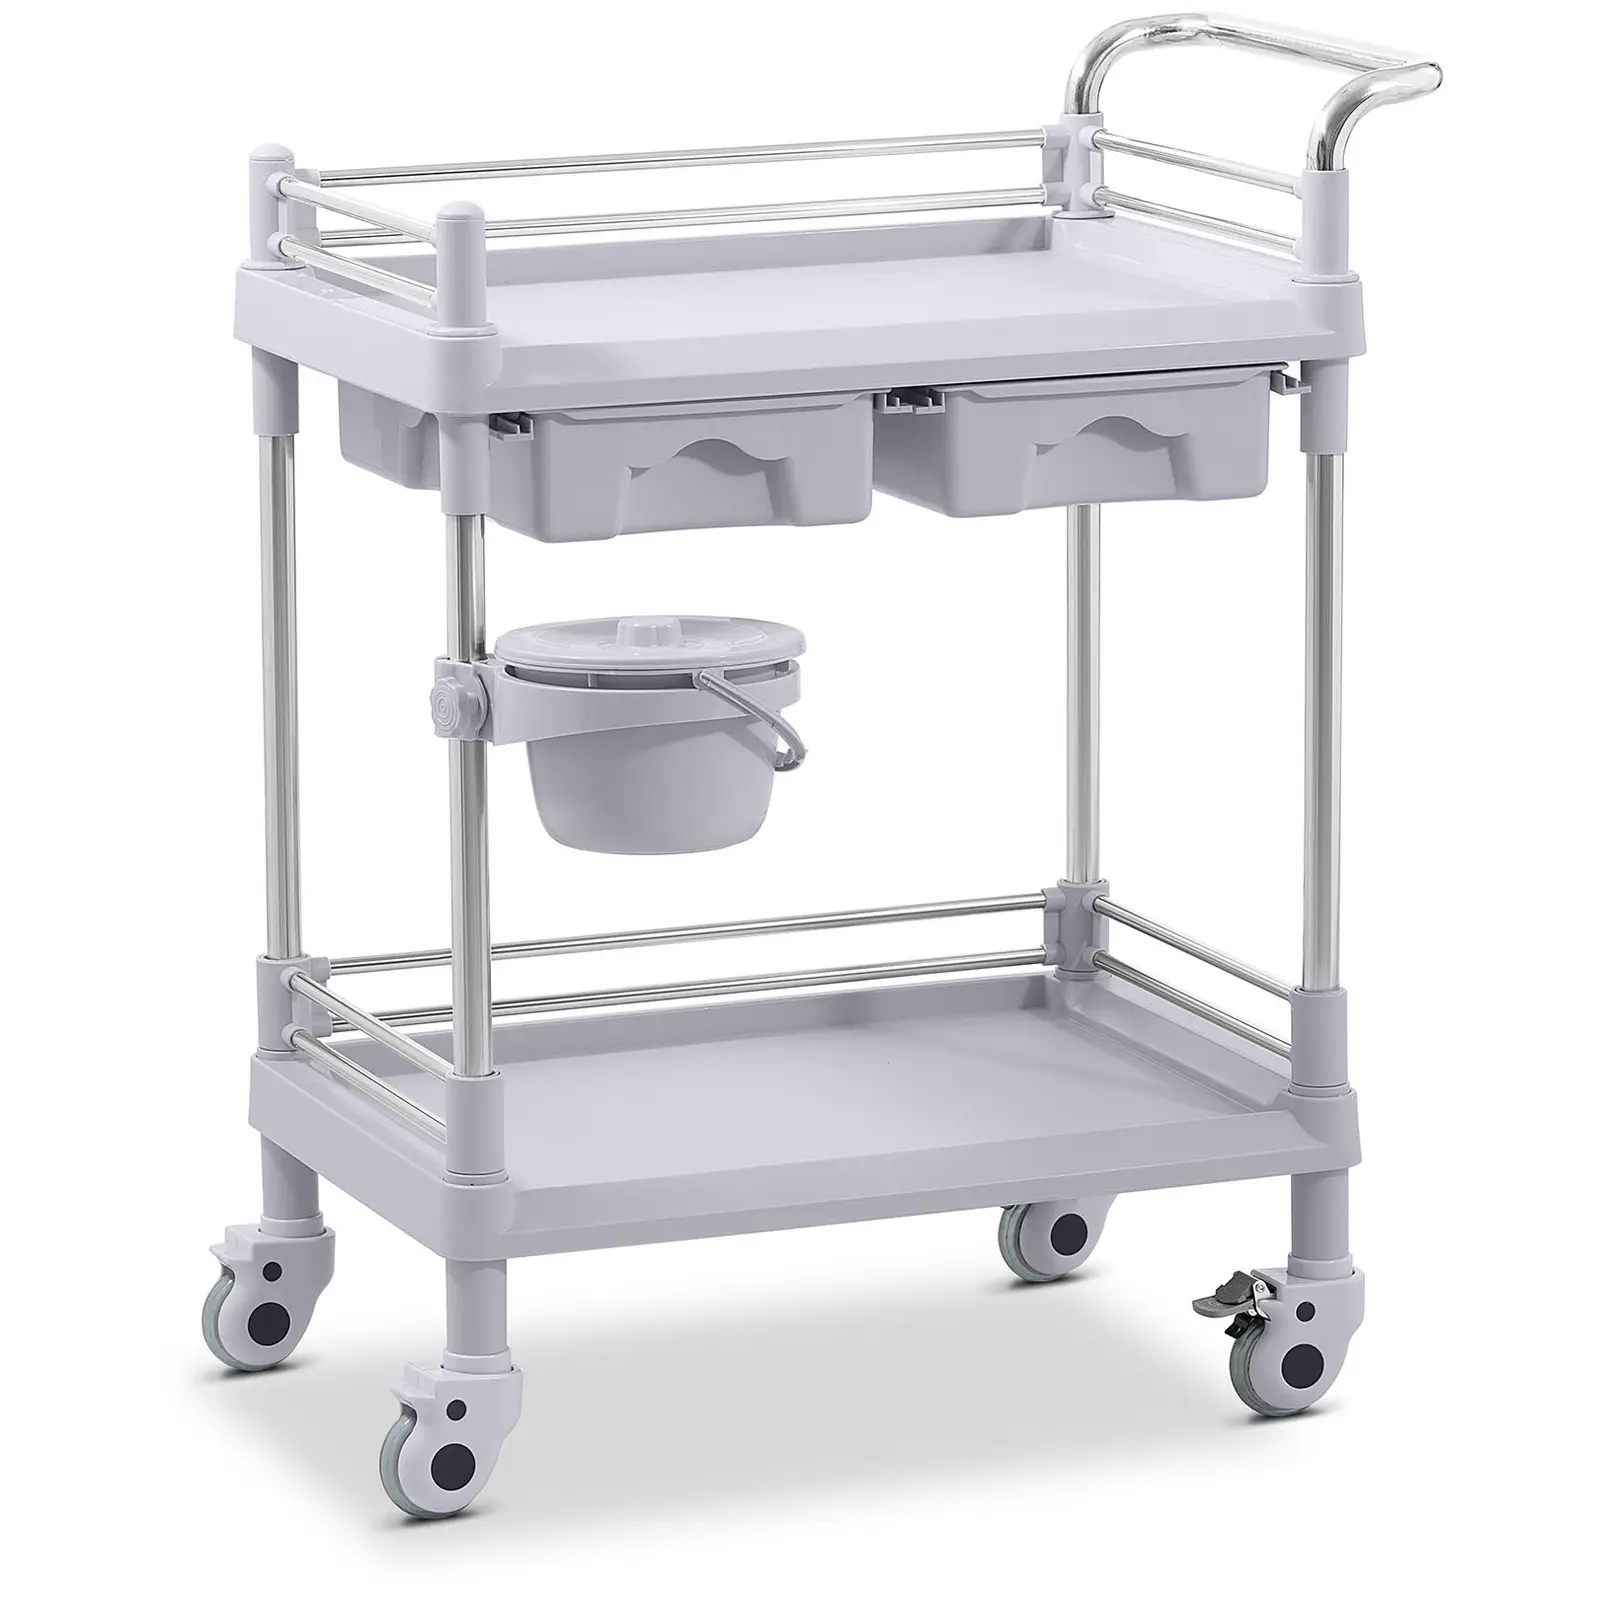 Laboratorinis vežimėlis - 2 lentynos po 53 x 38 x 14 cm - 2 stalčiai - 40 kg